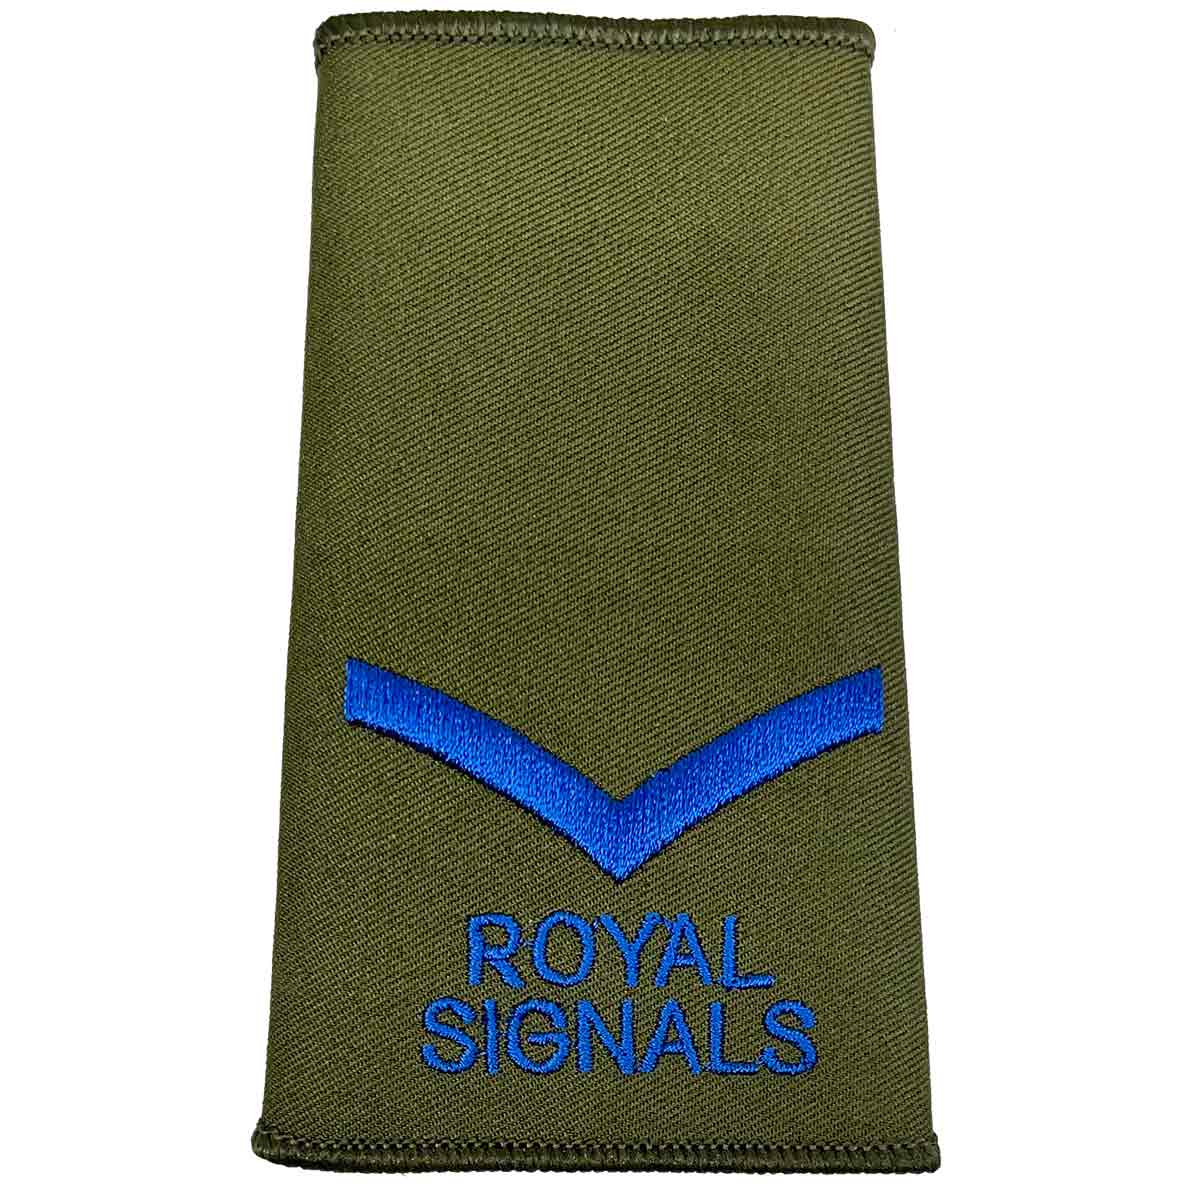 Royal Signals Olive Green Rank Slides (Pair) - John Bull Clothing